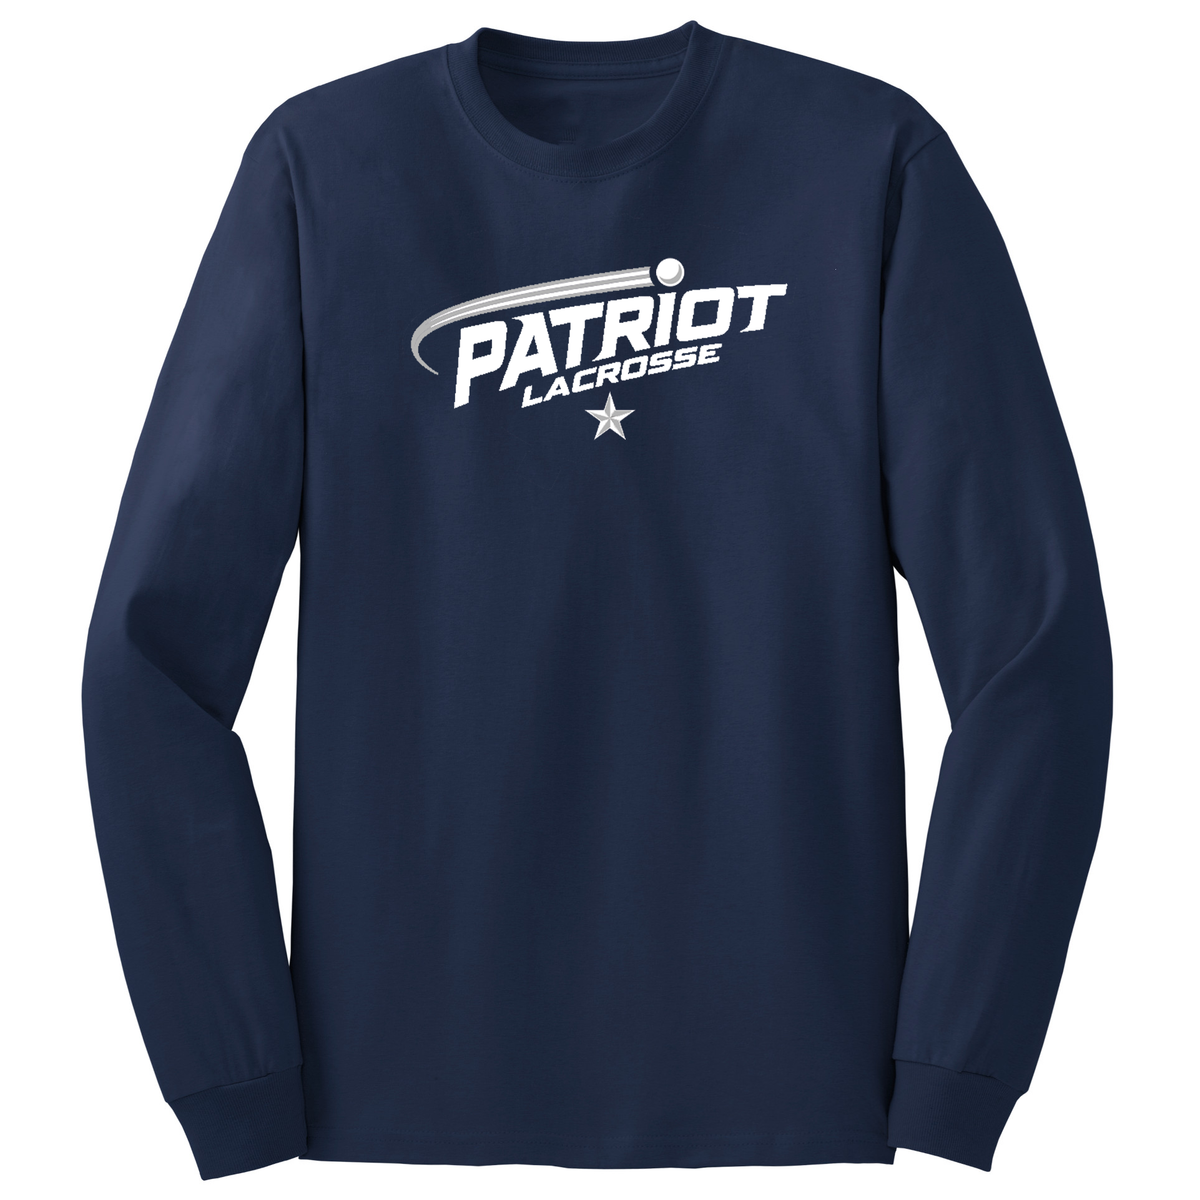 Patriot Lacrosse Cotton Long Sleeve Shirt